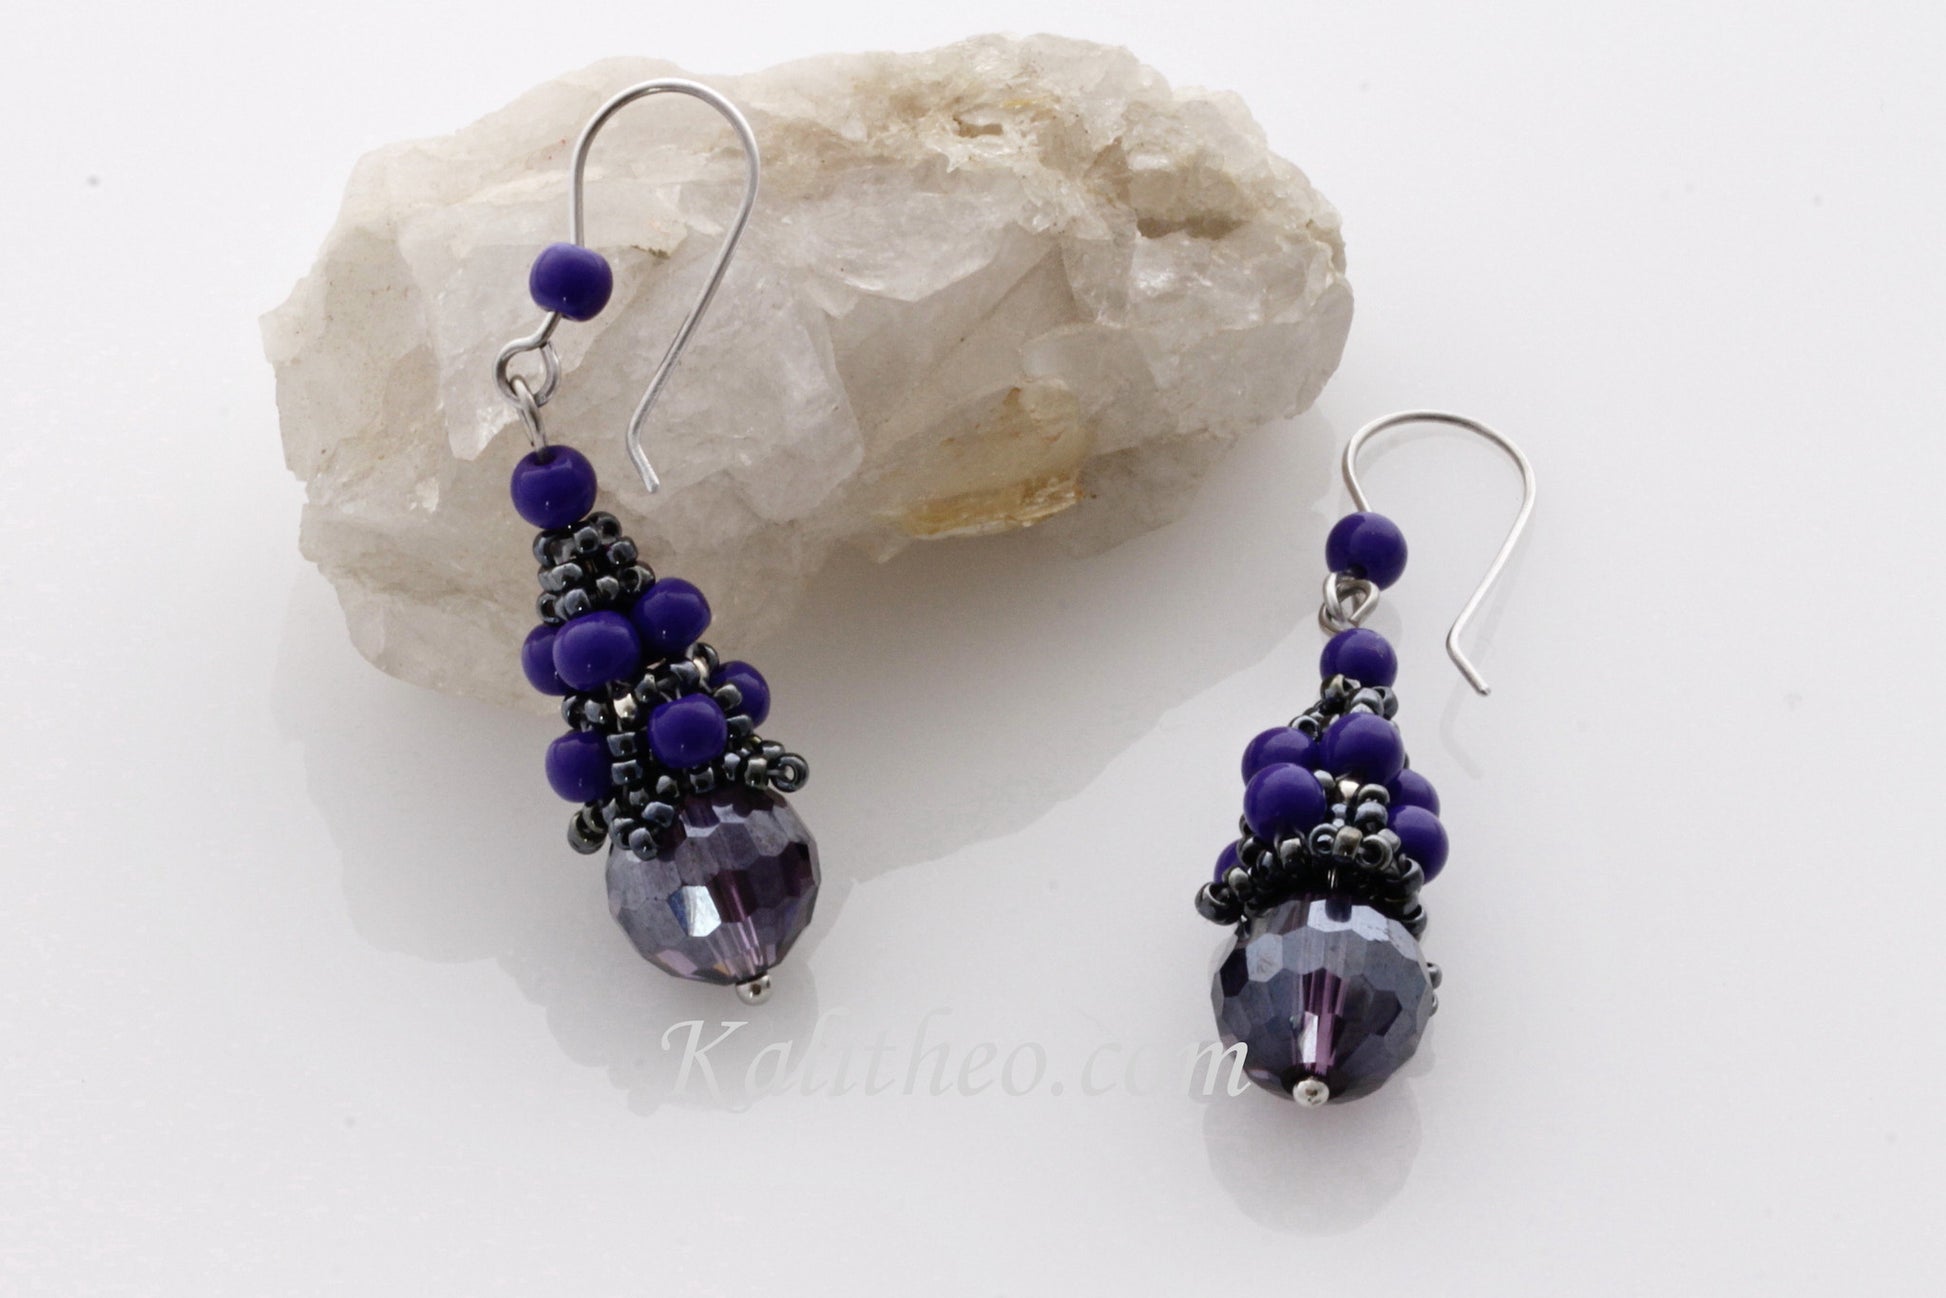 KTC-279 Beaded Cap Purple Dangle Earrings - Kalitheo Jewellery